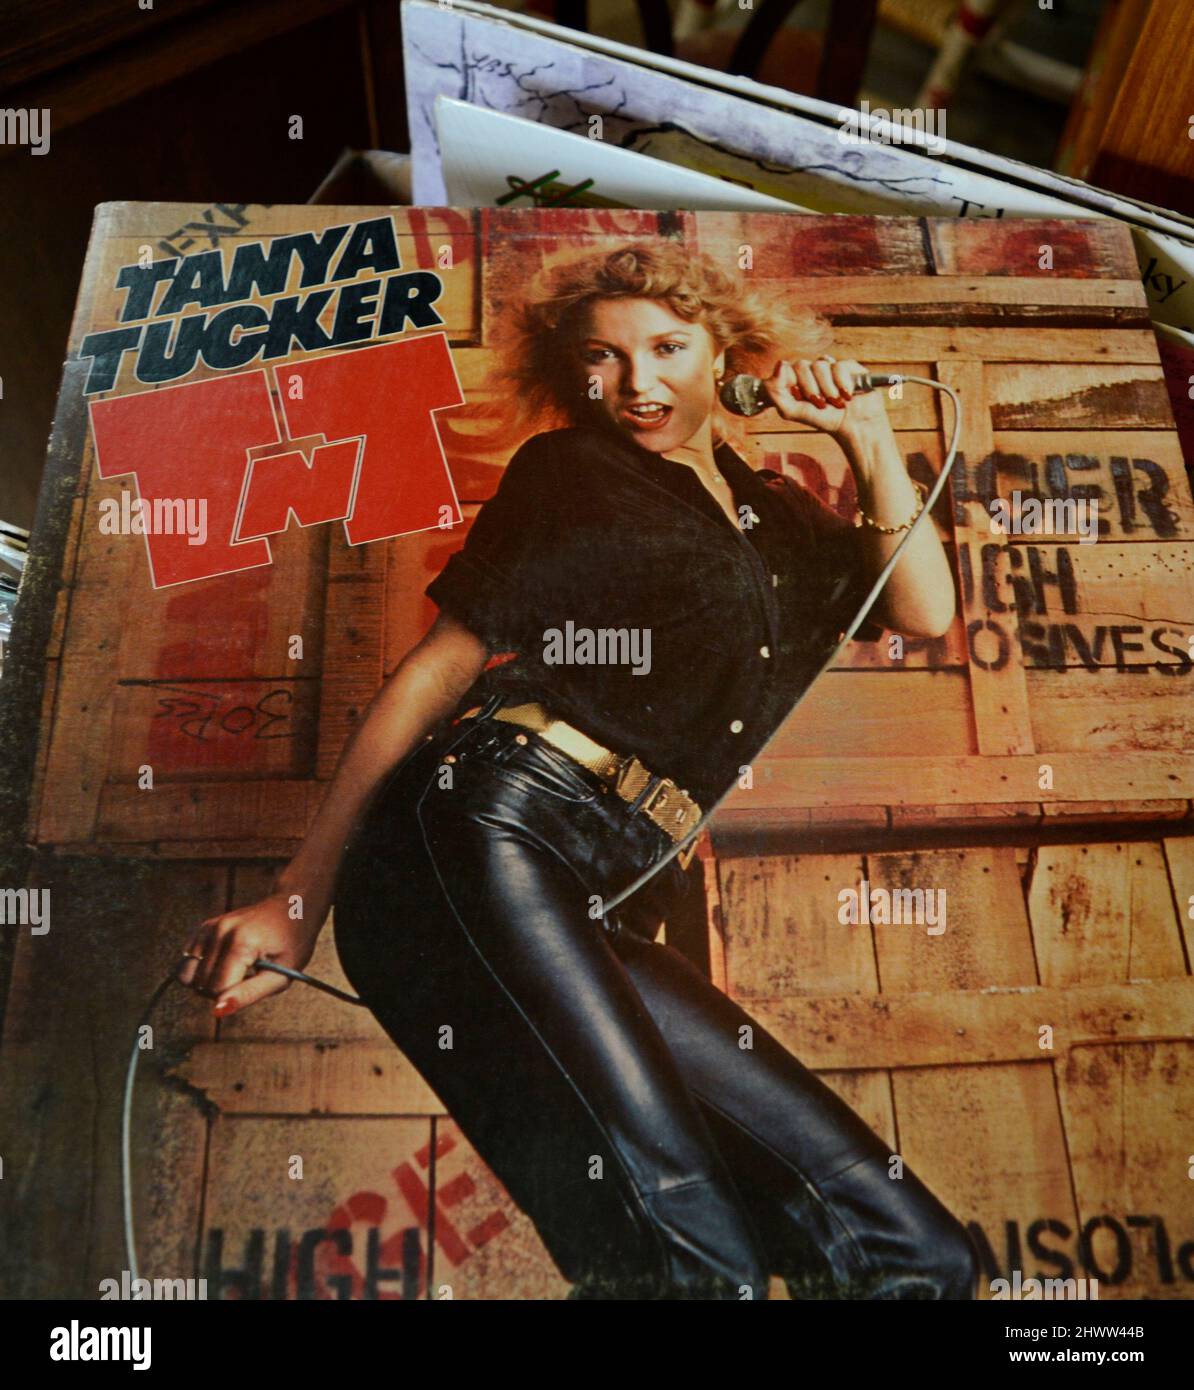 Eine Kopie des von der Sängerin Tanya Tucker für den Grammy nominierten Plattenalbums aus dem Jahr 1978 mit dem Titel „TNT“, das in einem Antiquitätengeschäft verkauft wird. Stockfoto